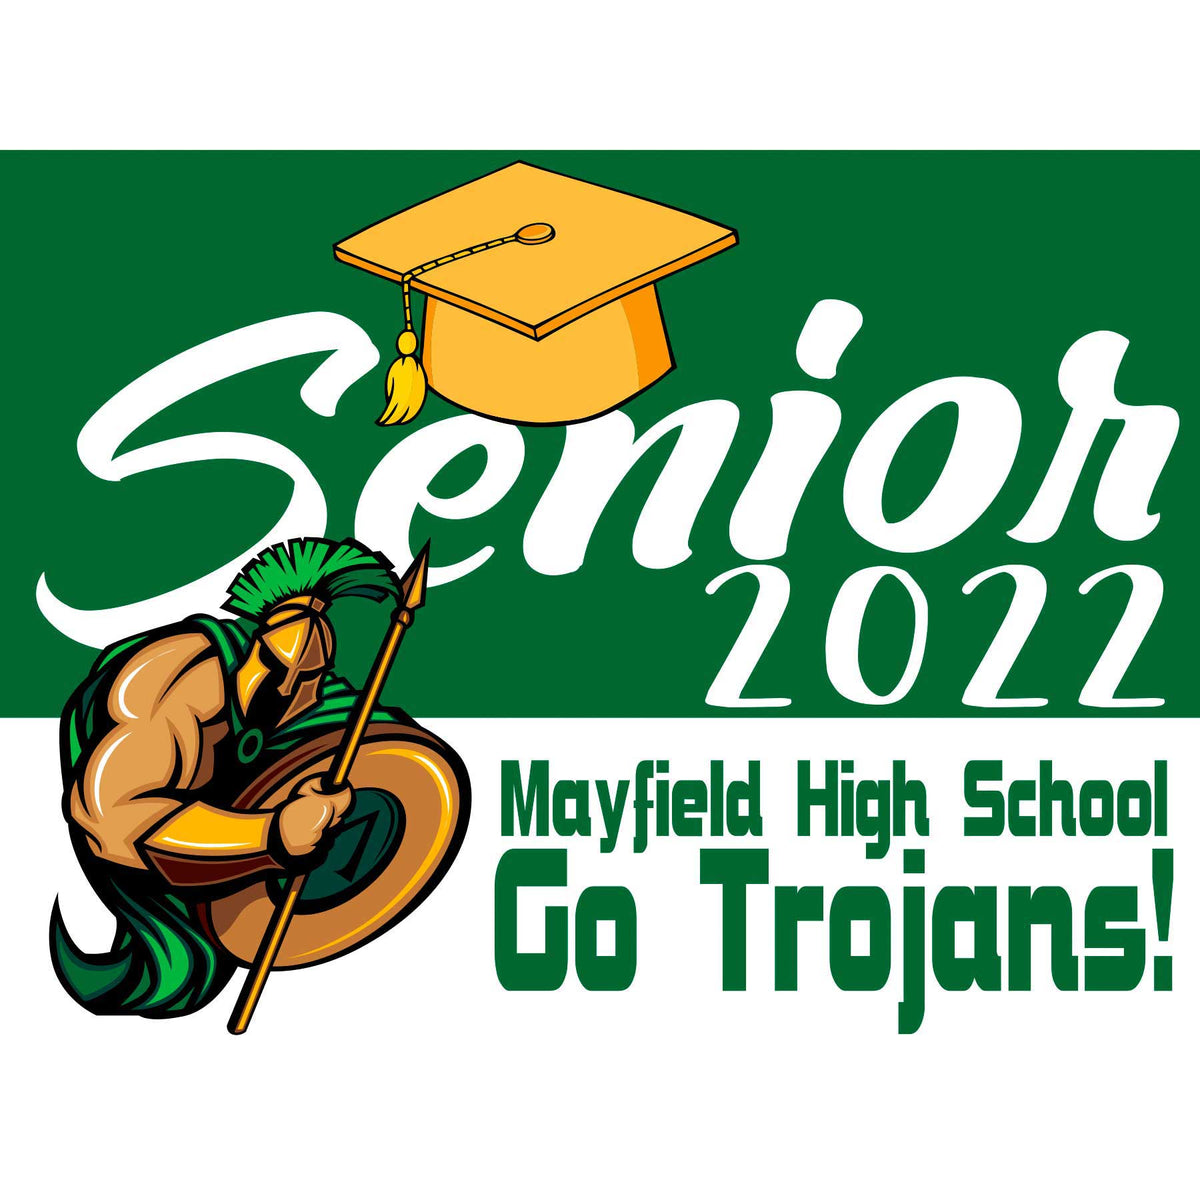 Mayfield High School Senior Yard Sign